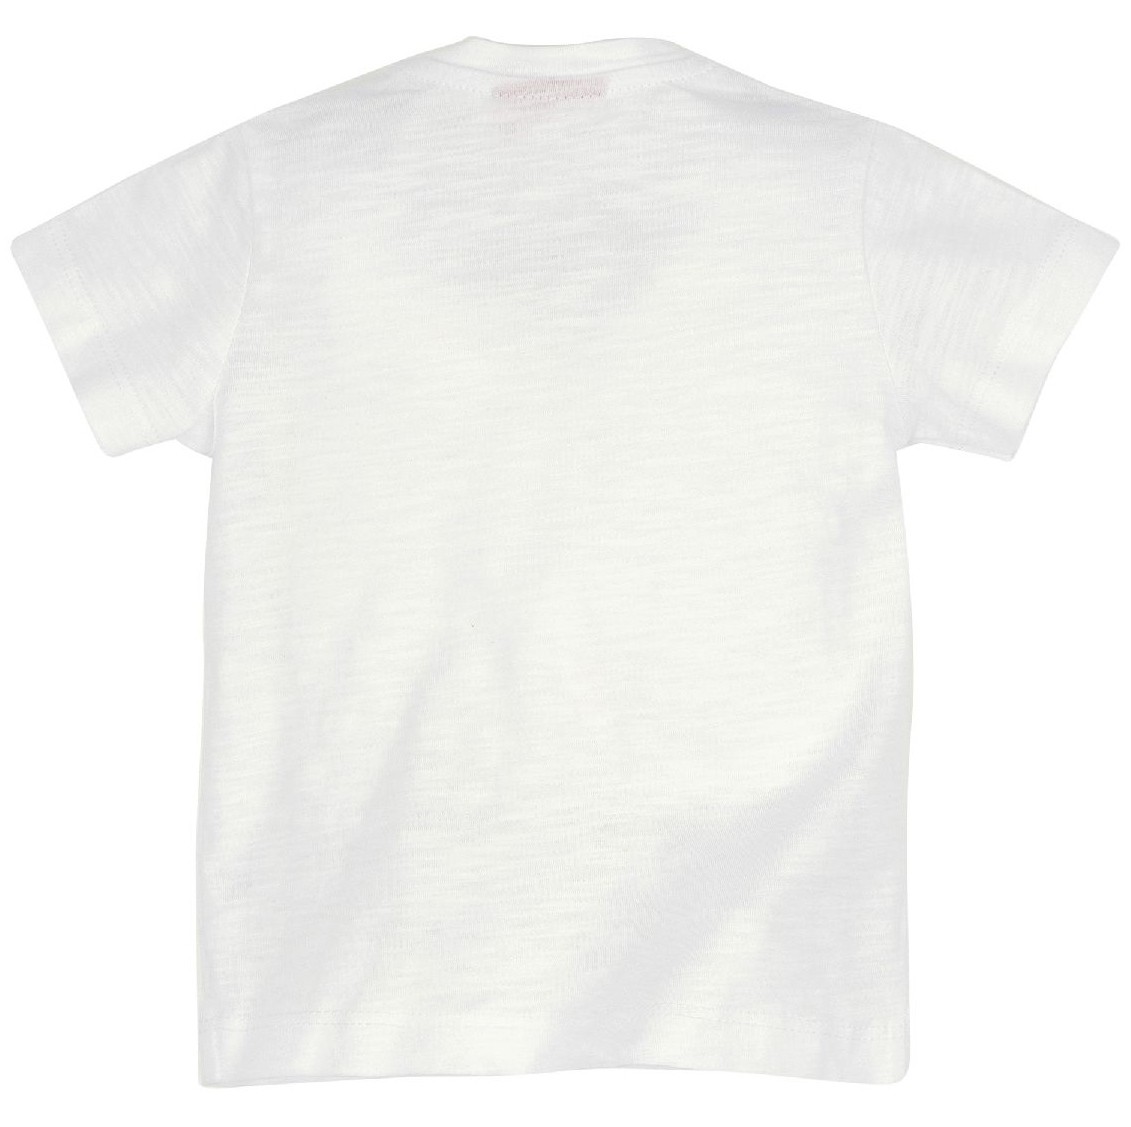 Voorvertoning: T-shirt 'Gipfelkraxler'